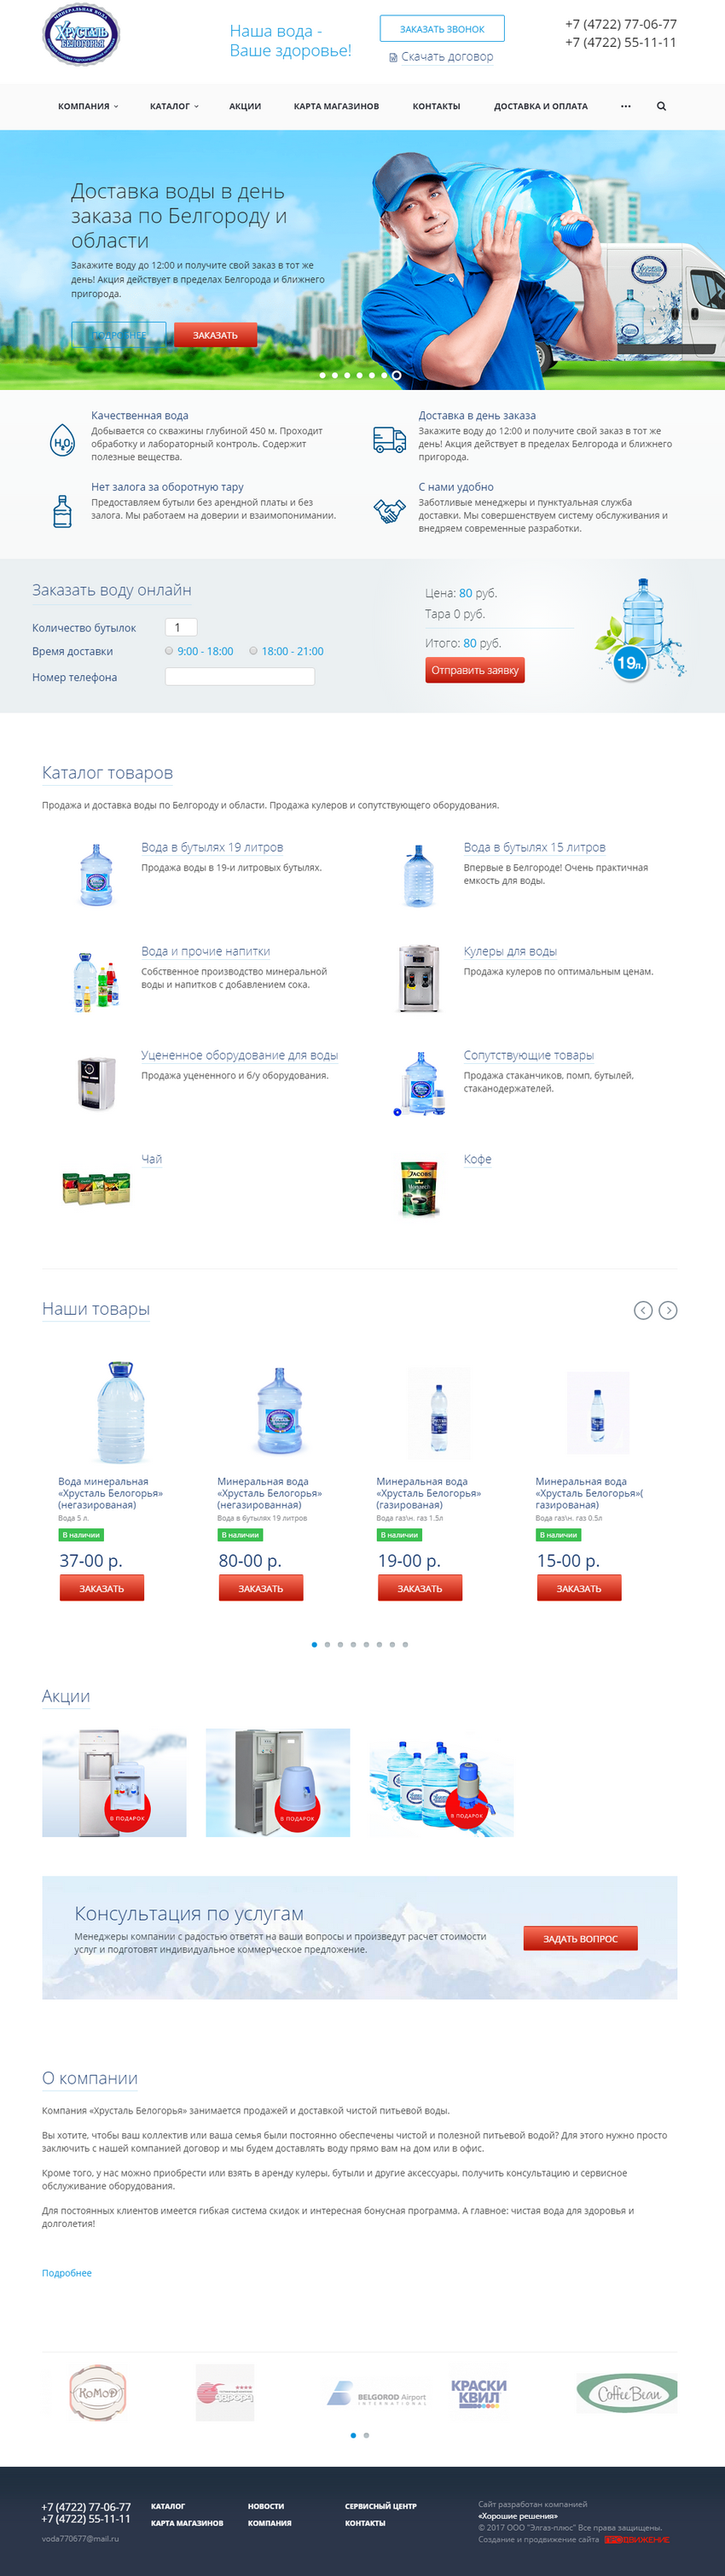 Разработка сайта для продажи воды торговой марки Хрусталь белогорья — шаблон главной страницы